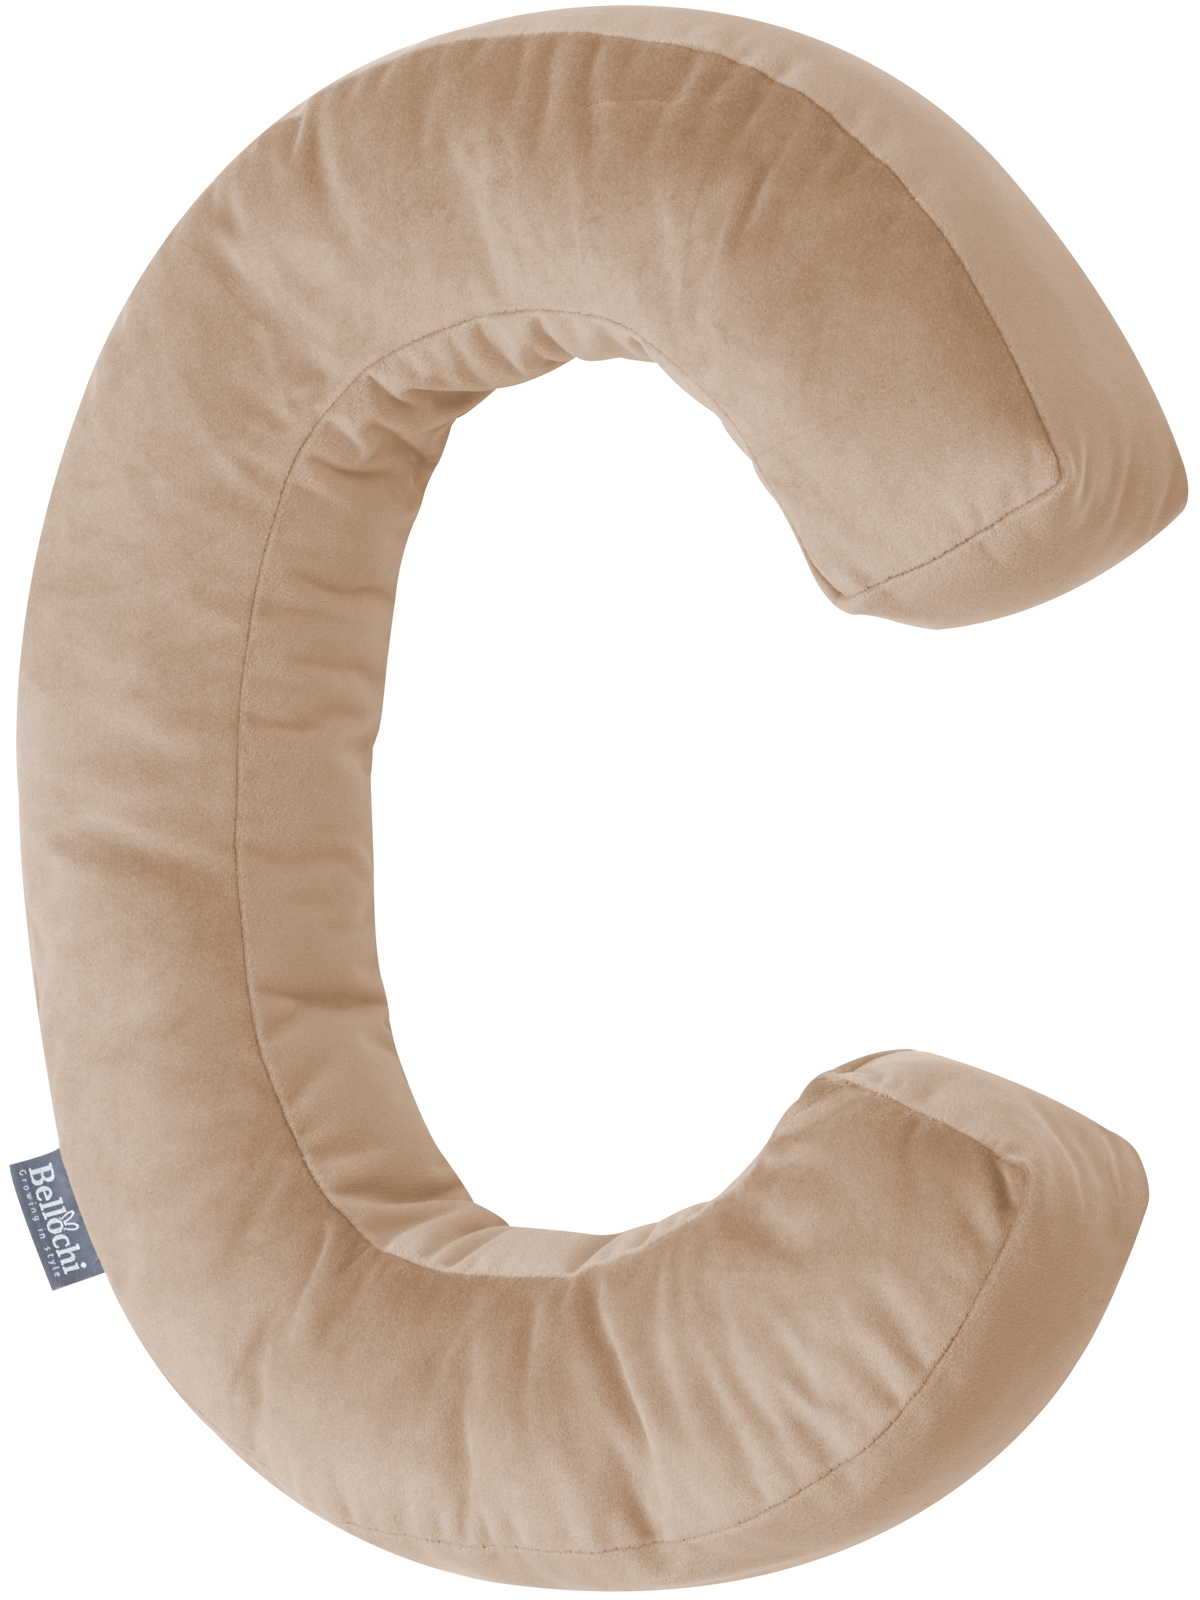 Decorative velvet letter pillow C shaped beige